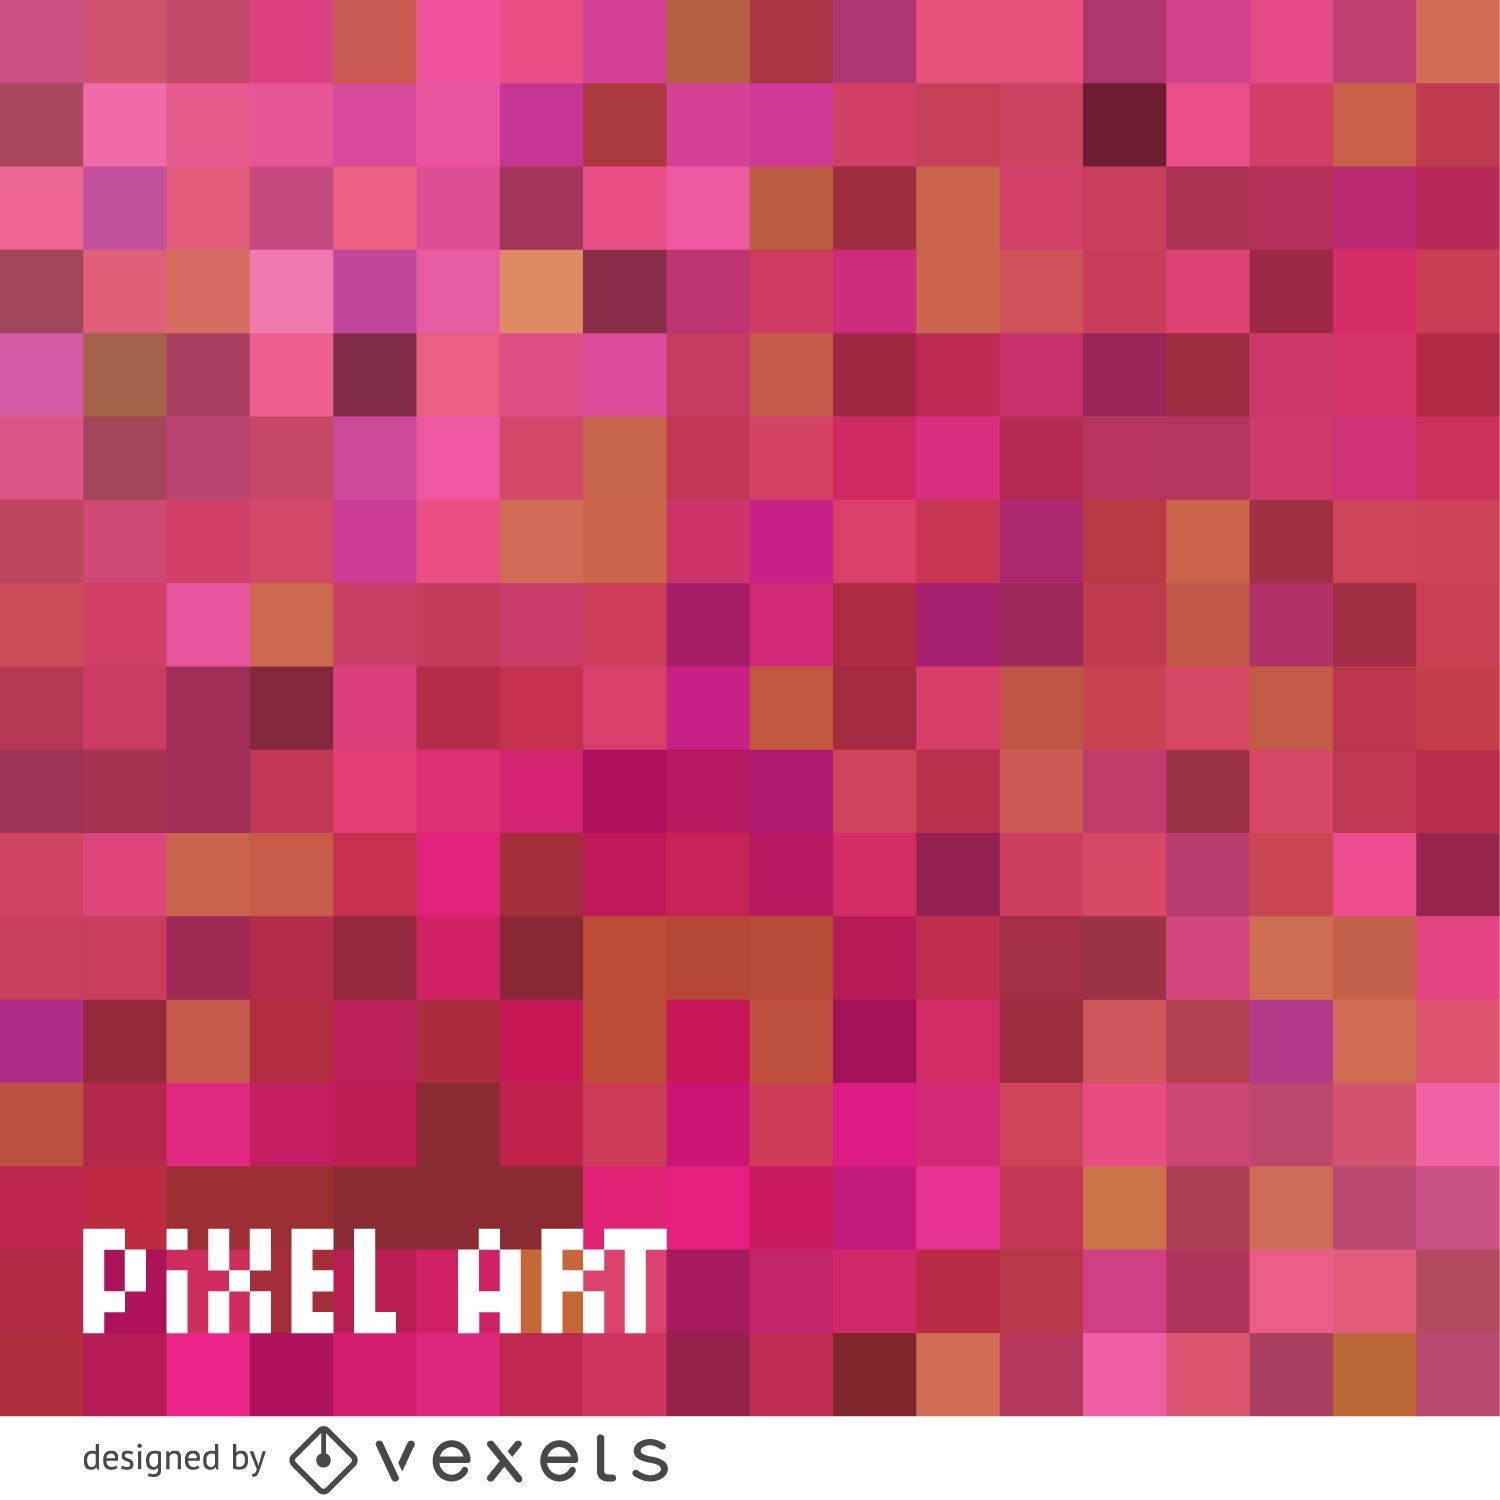 Rosa Pixelkunsthintergrund